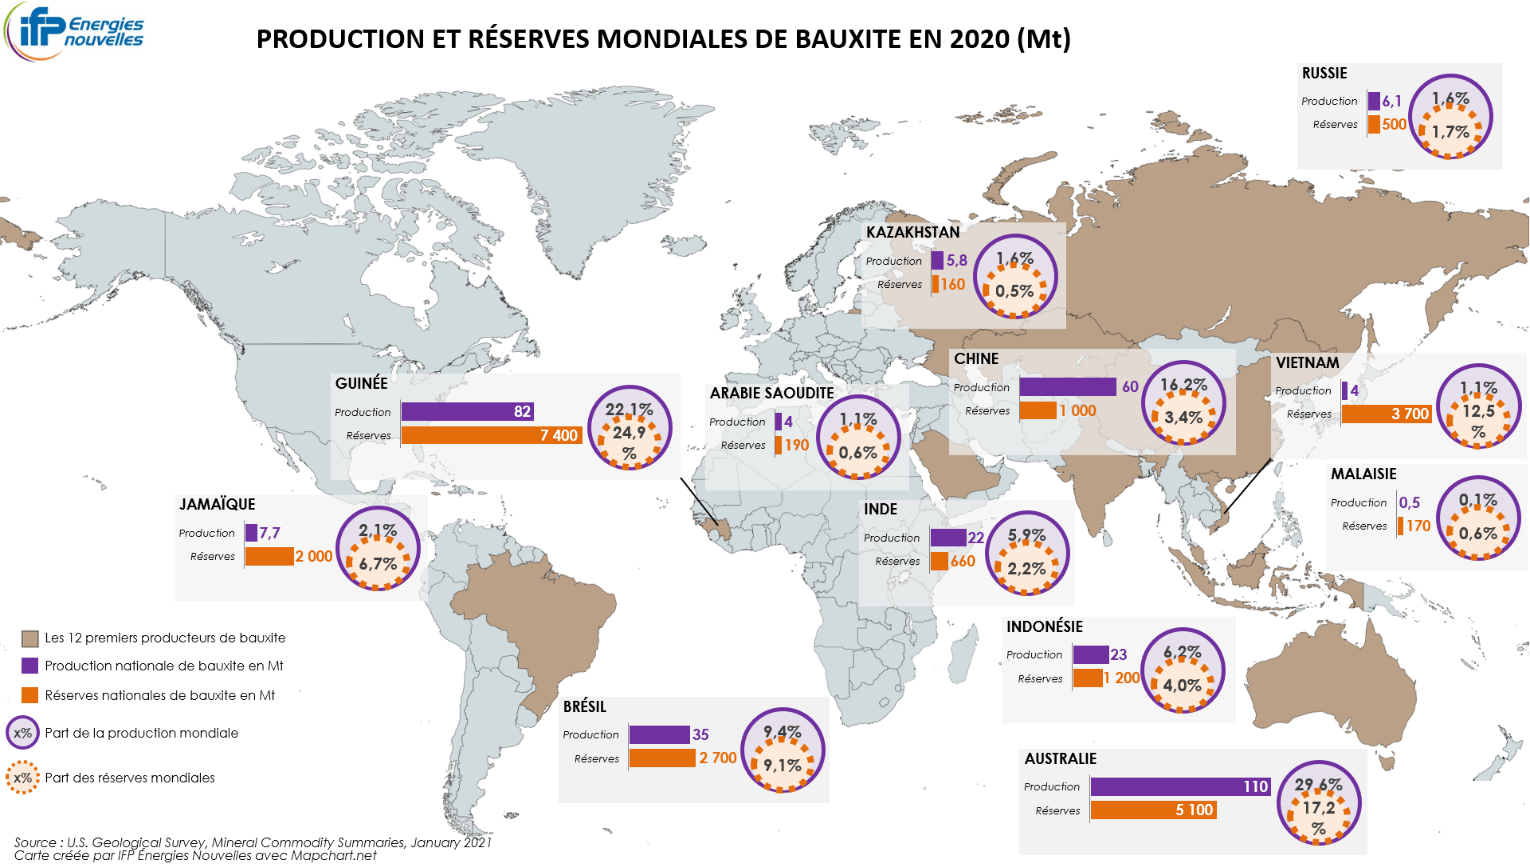 Production et réserves mondiales de bauxite en 2020